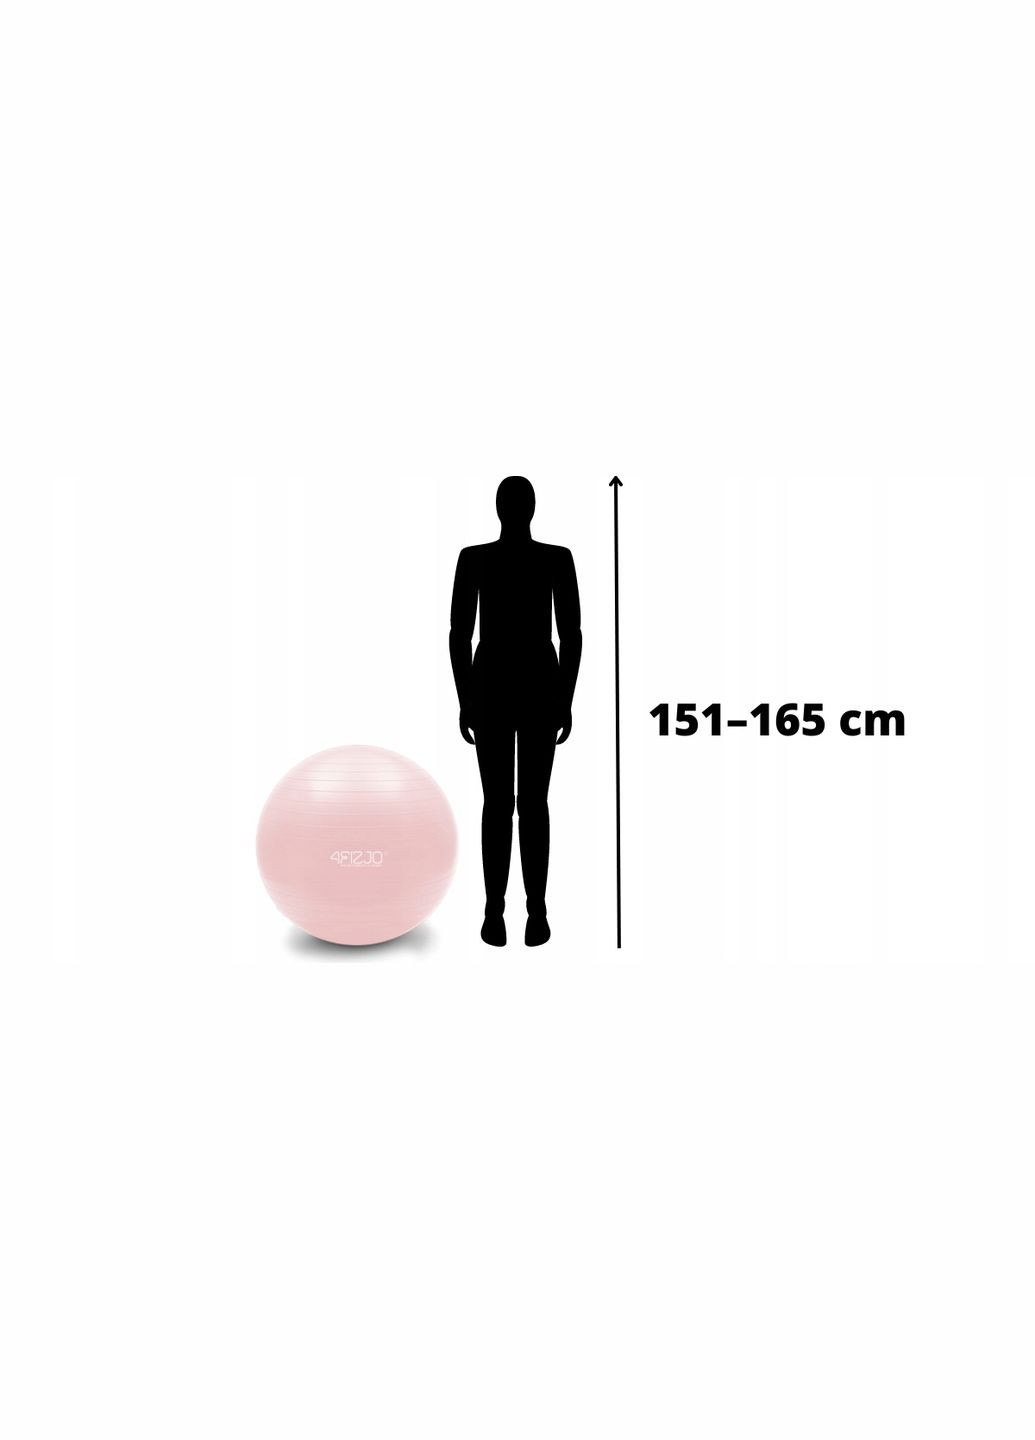 М'яч для фітнесу (фітбол) 65 см AntiBurst Pink 4FIZJO 4fj0401 (275095741)